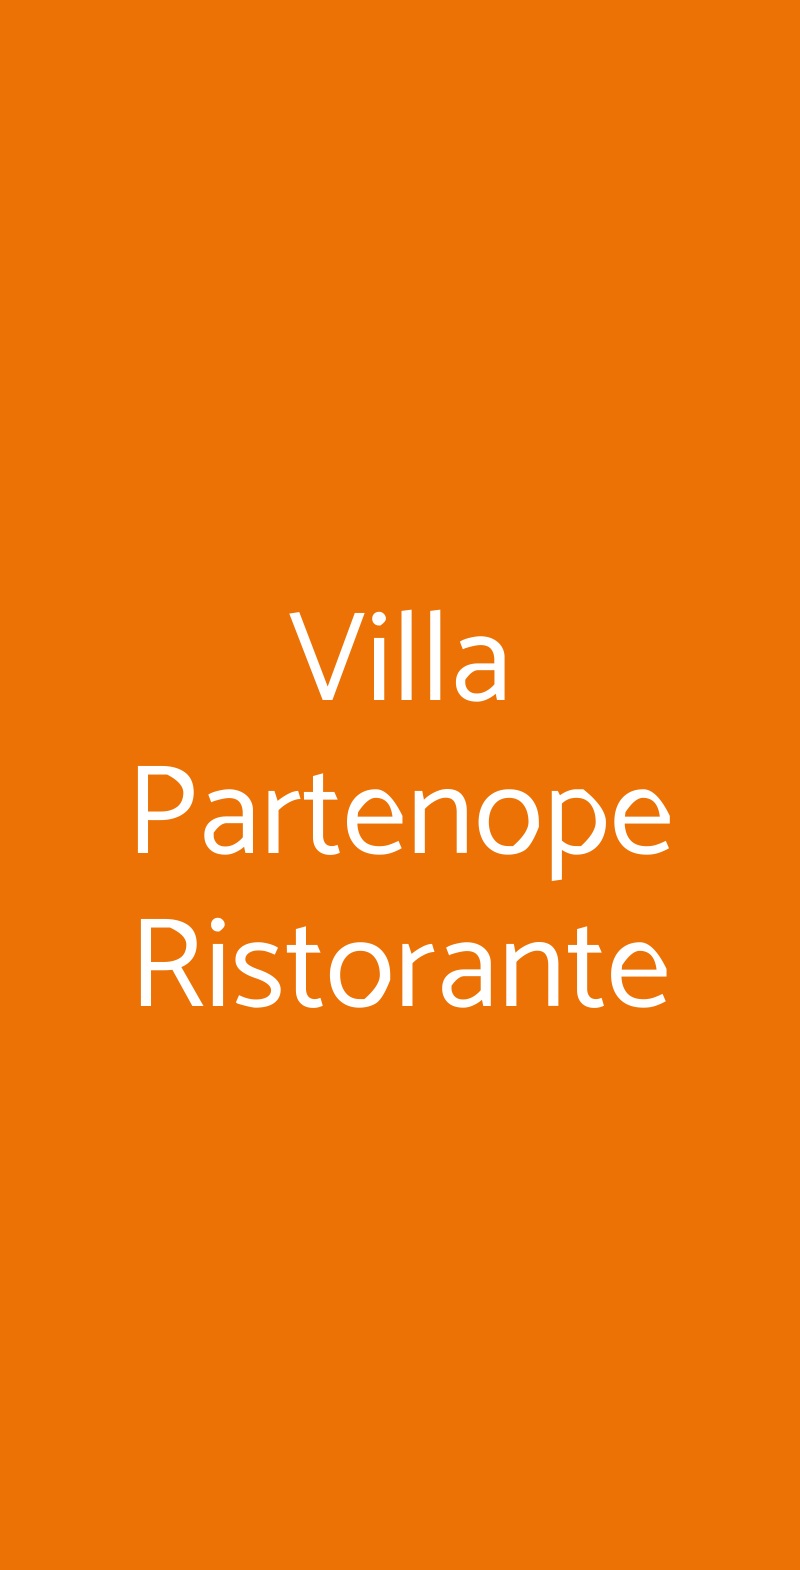 Villa Partenope Ristorante Napoli menù 1 pagina